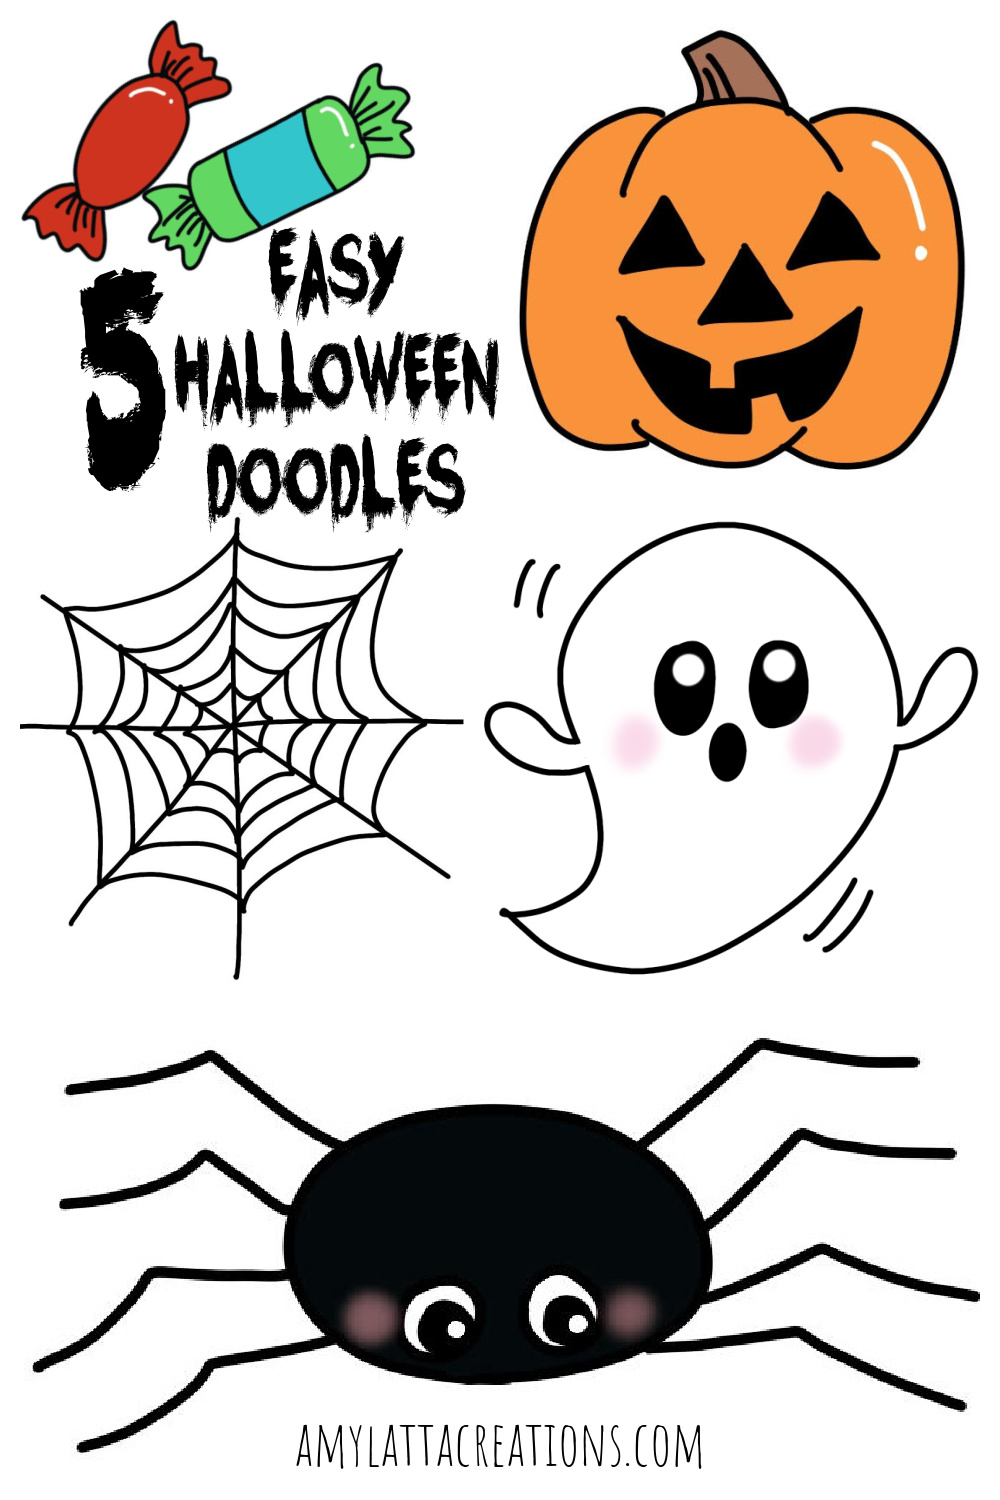 5 Easy Halloween Doodles